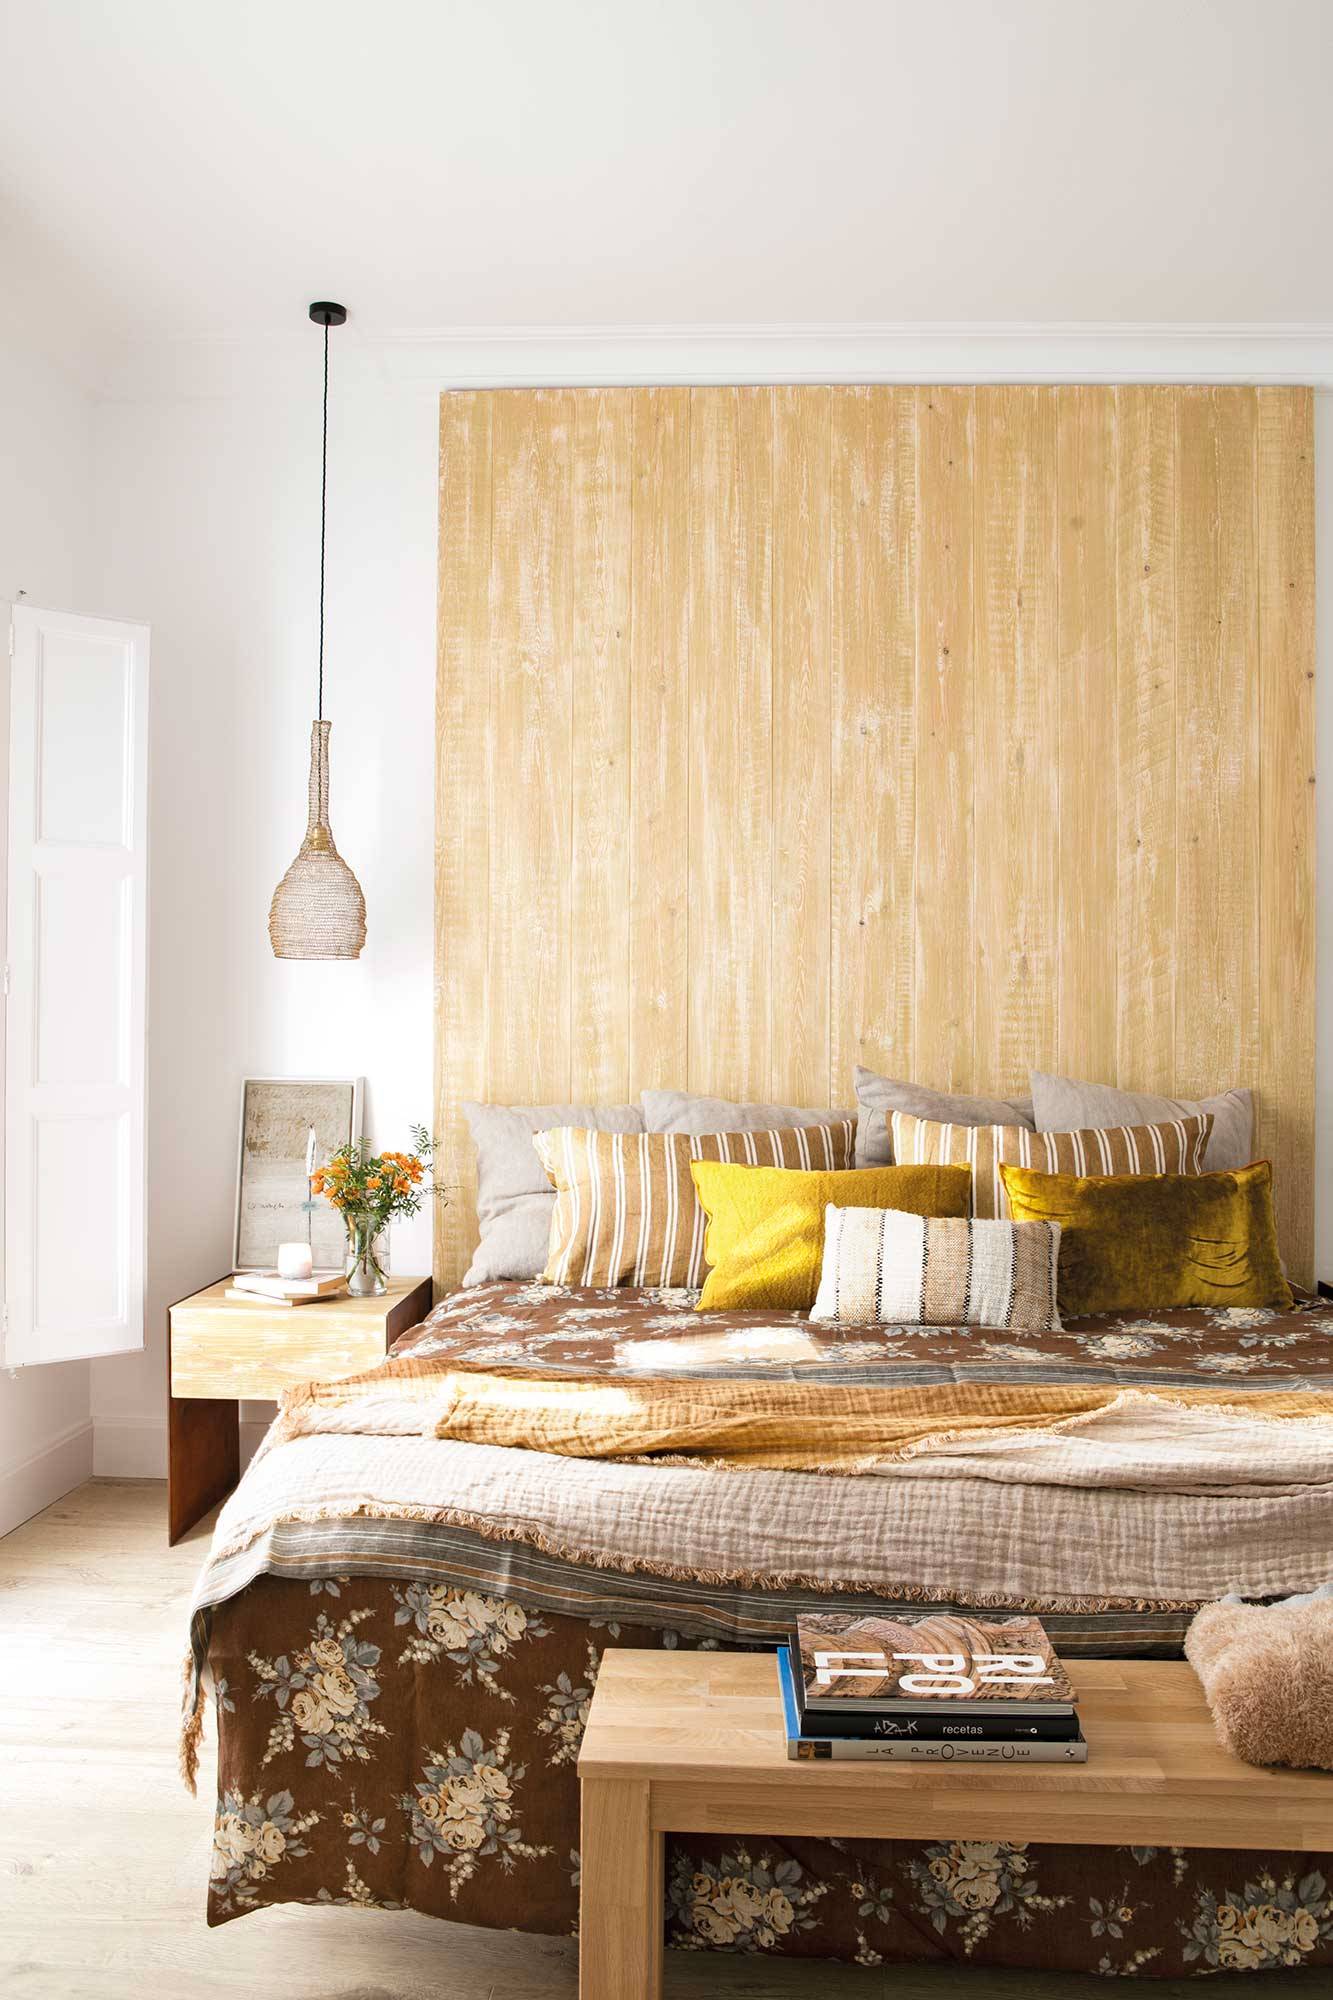 Un dormitorio en blanco con un maxi cabecero de madera